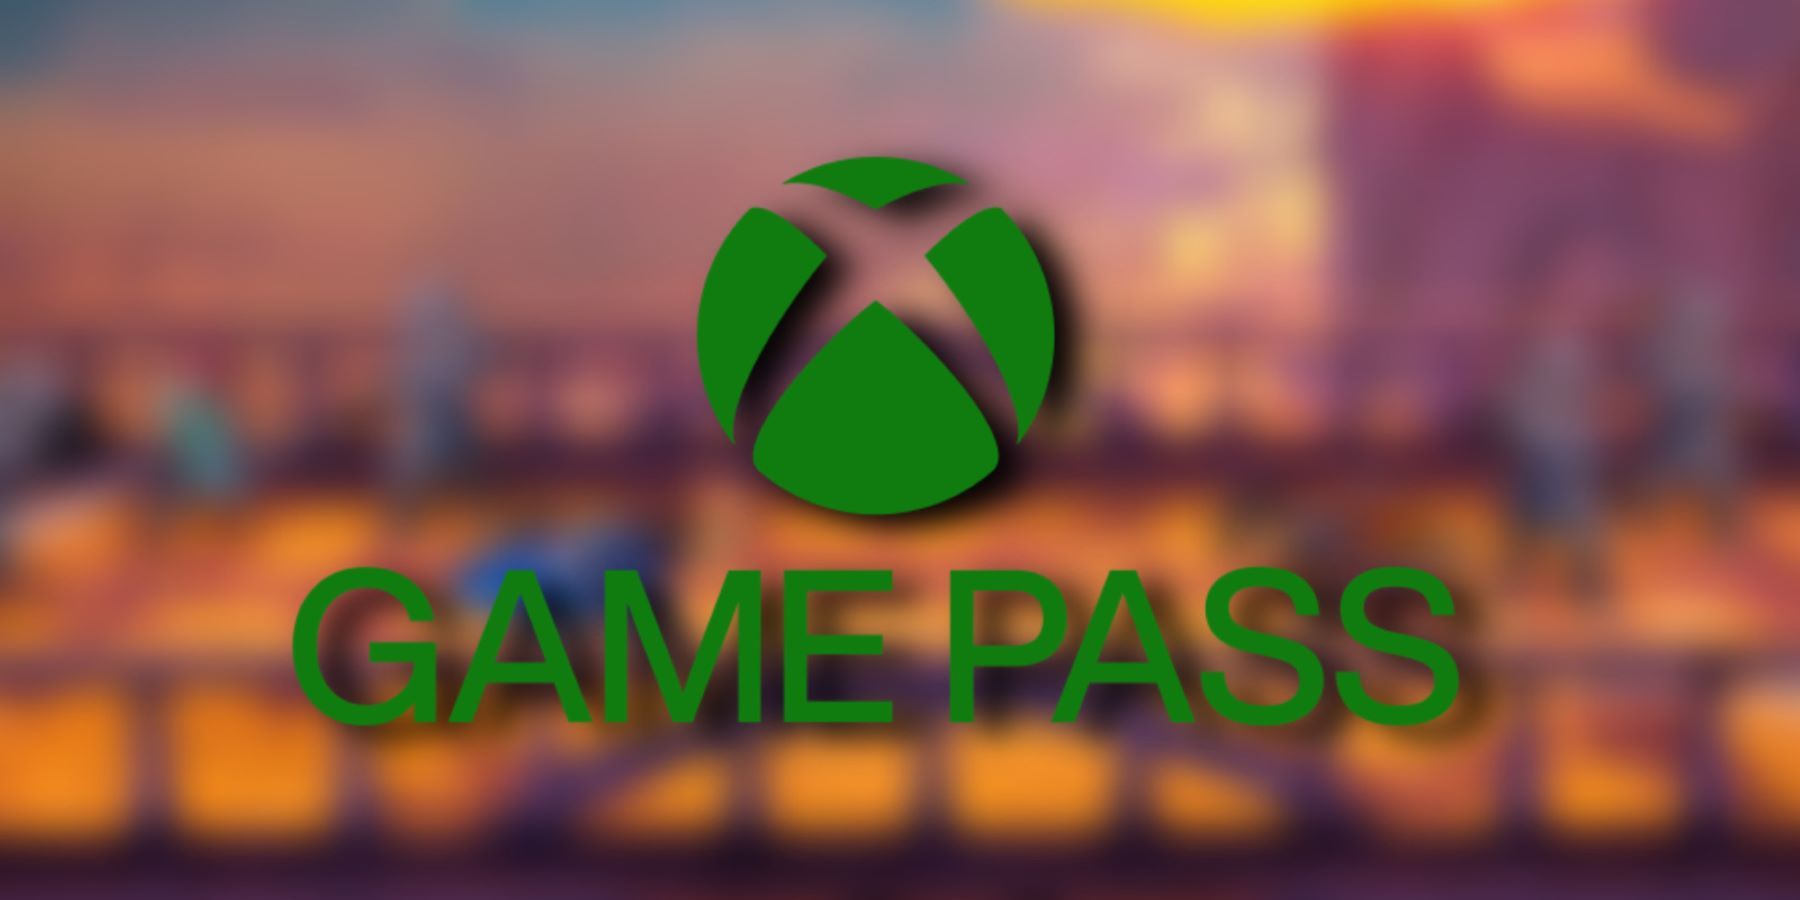 4 月 23 日推出的新 Xbox Game Pass 游戏获得好评